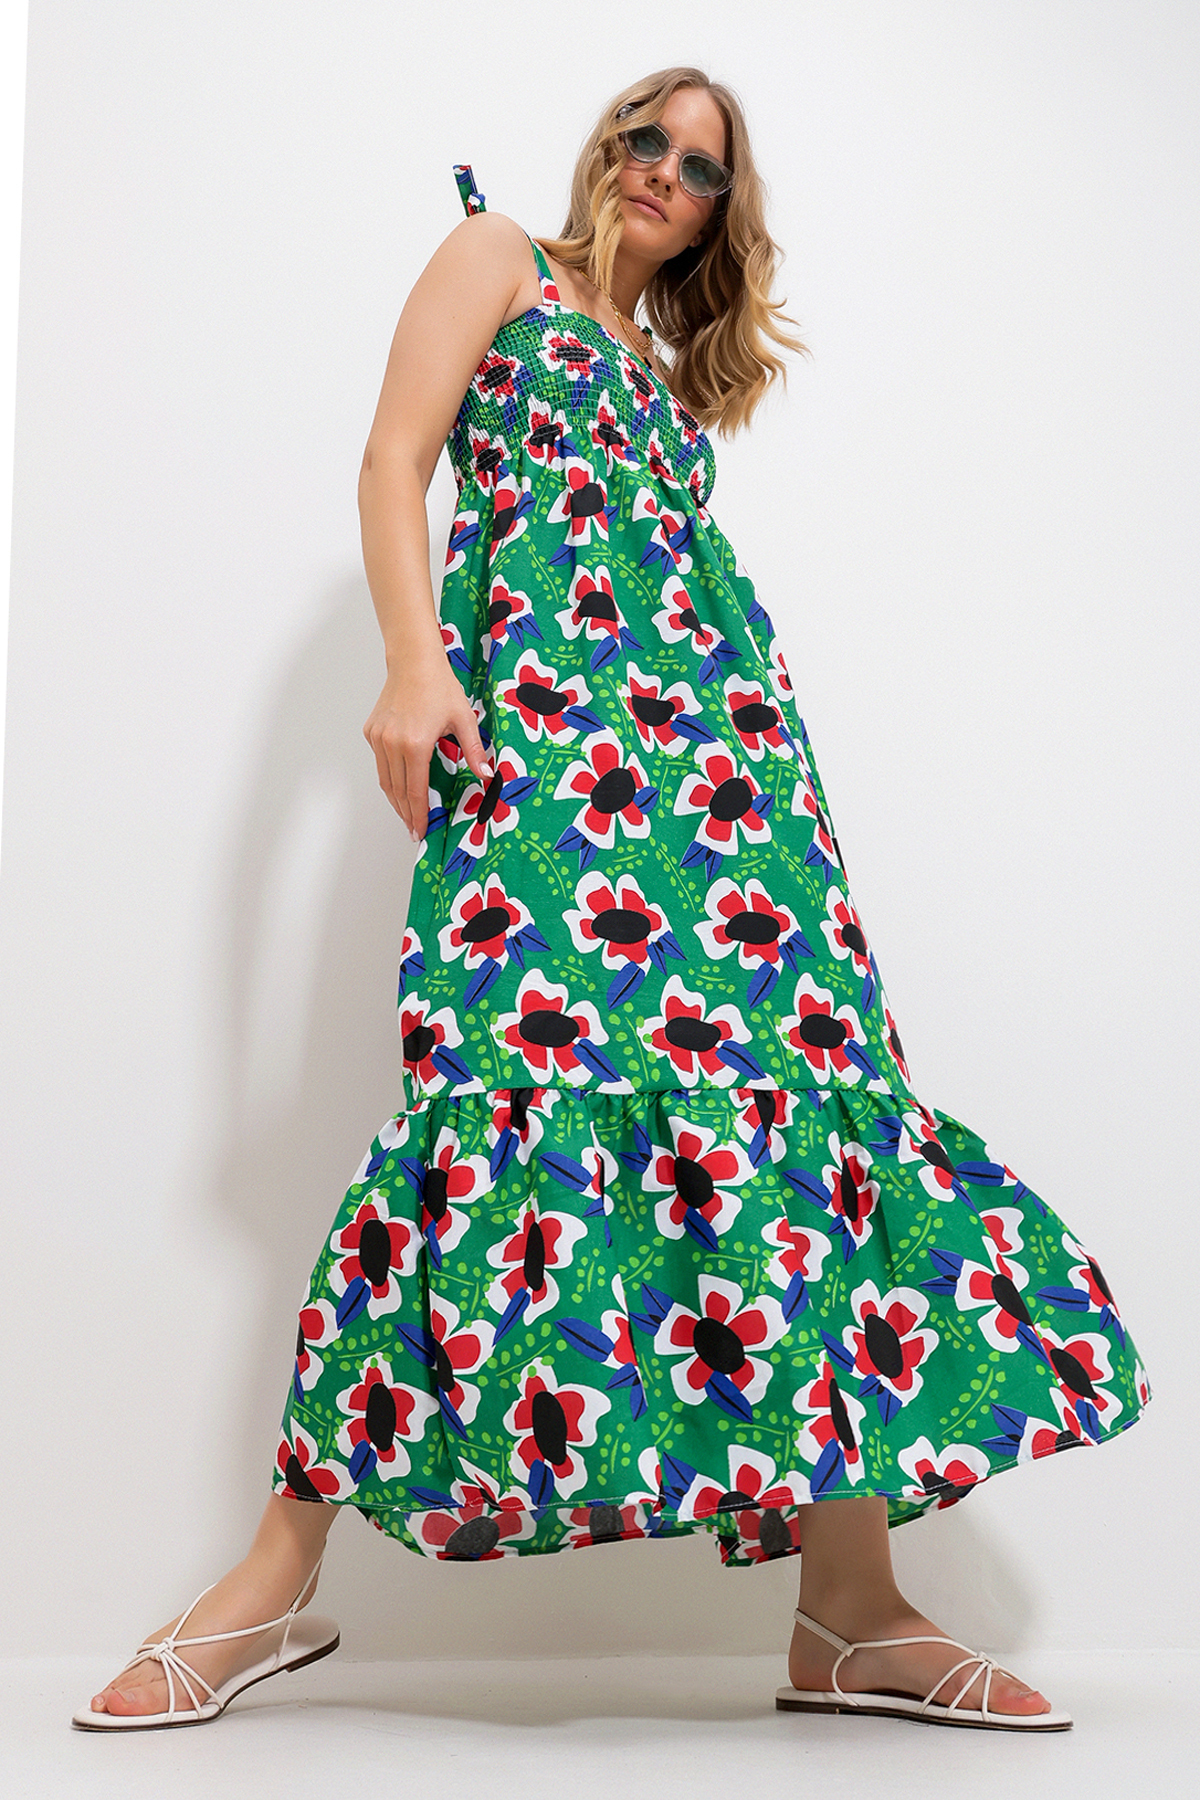 Trend Alaçatı Stili Women's Green Strap Skirt Flounce Floral Pattern Gimped Woven Dress